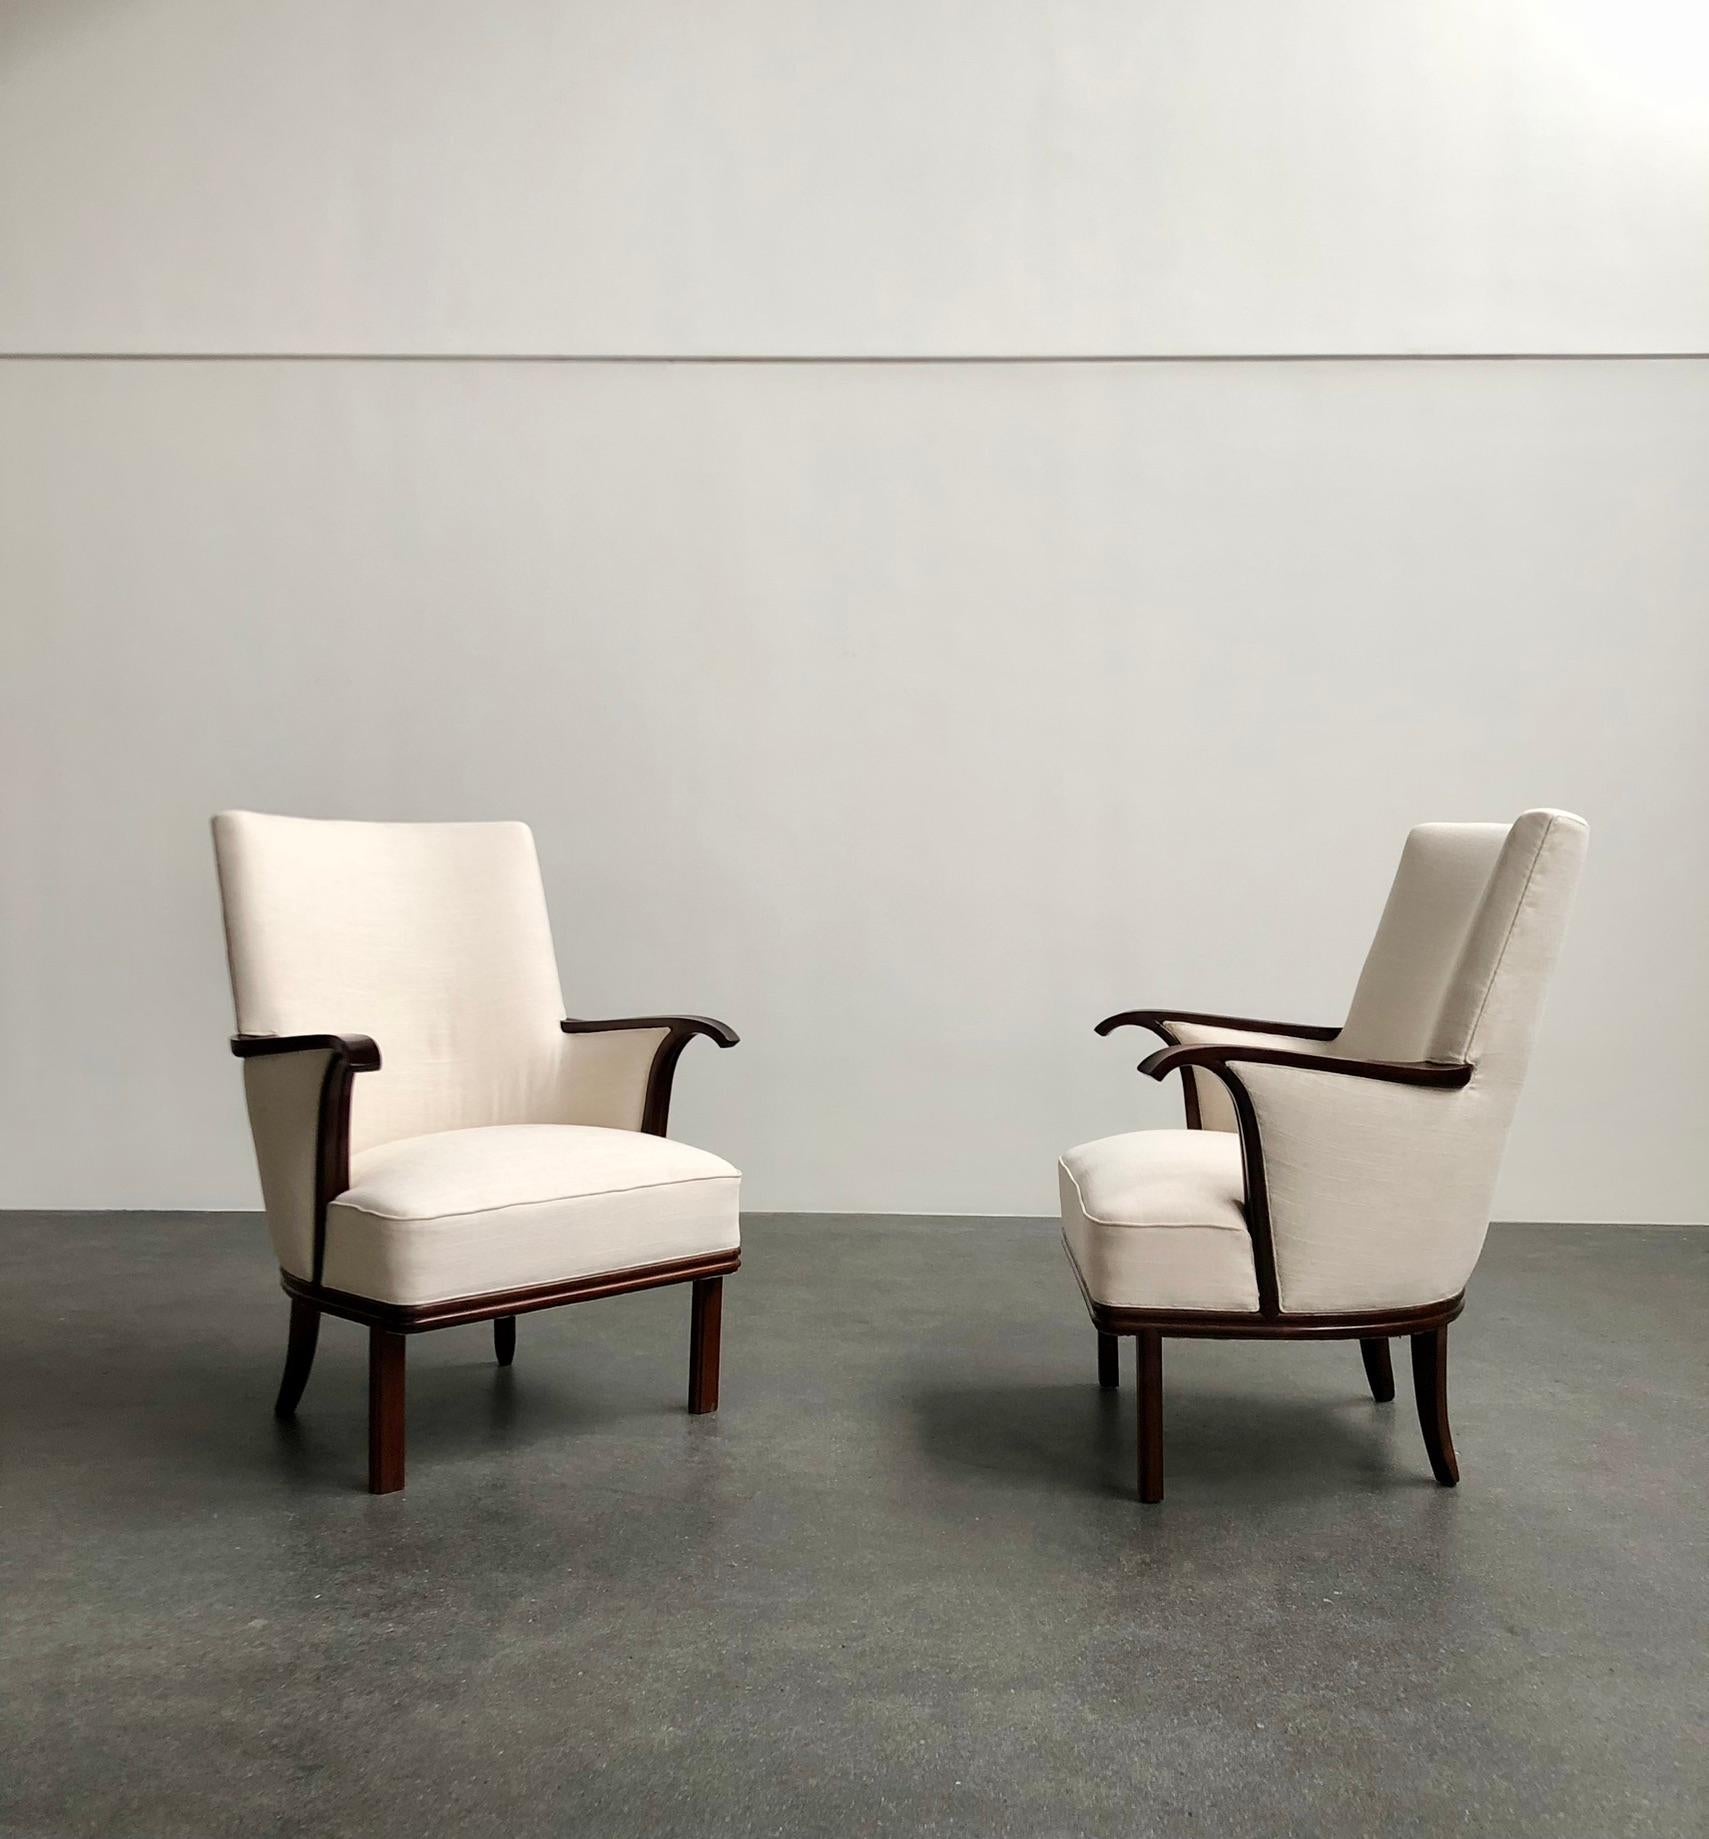 Paire de fauteuils à dossier haut conçus par l'architecte danois Ernst Kühn, 1935.

Nouvellement retapissé en tissu. Le palissandre a été remis à neuf.

Il s'agit d'une paire de chaises unique qui a été fabriquée exclusivement pour l'intérieur de la